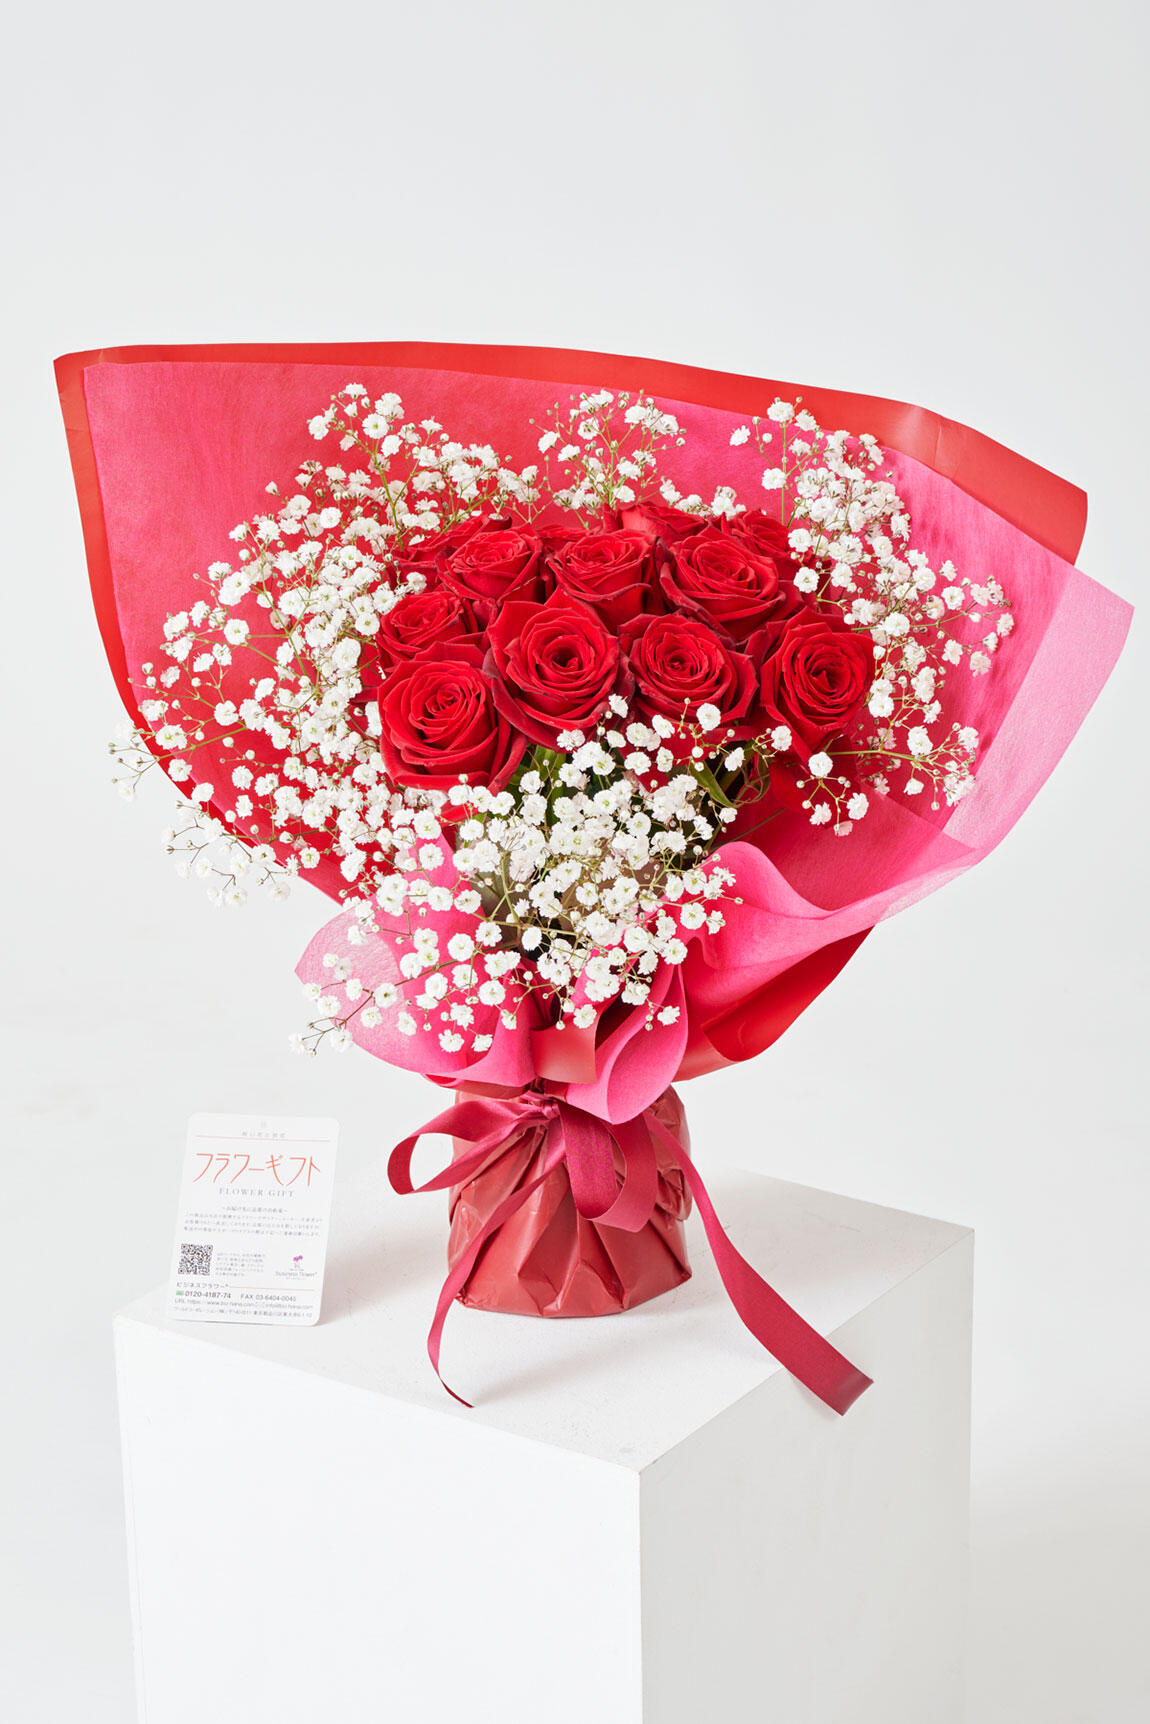 <p>水の交換などの手入れも不要で、国産苗にこだわった日本最高峰のバラ園の薔薇は長持ちです。花束を渡すまでに時間がかかってしまう場合や、花束のお渡しまでの保管にお困りの際は、そのまま置いて飾れる自立式の花束がおすすめです。</p>